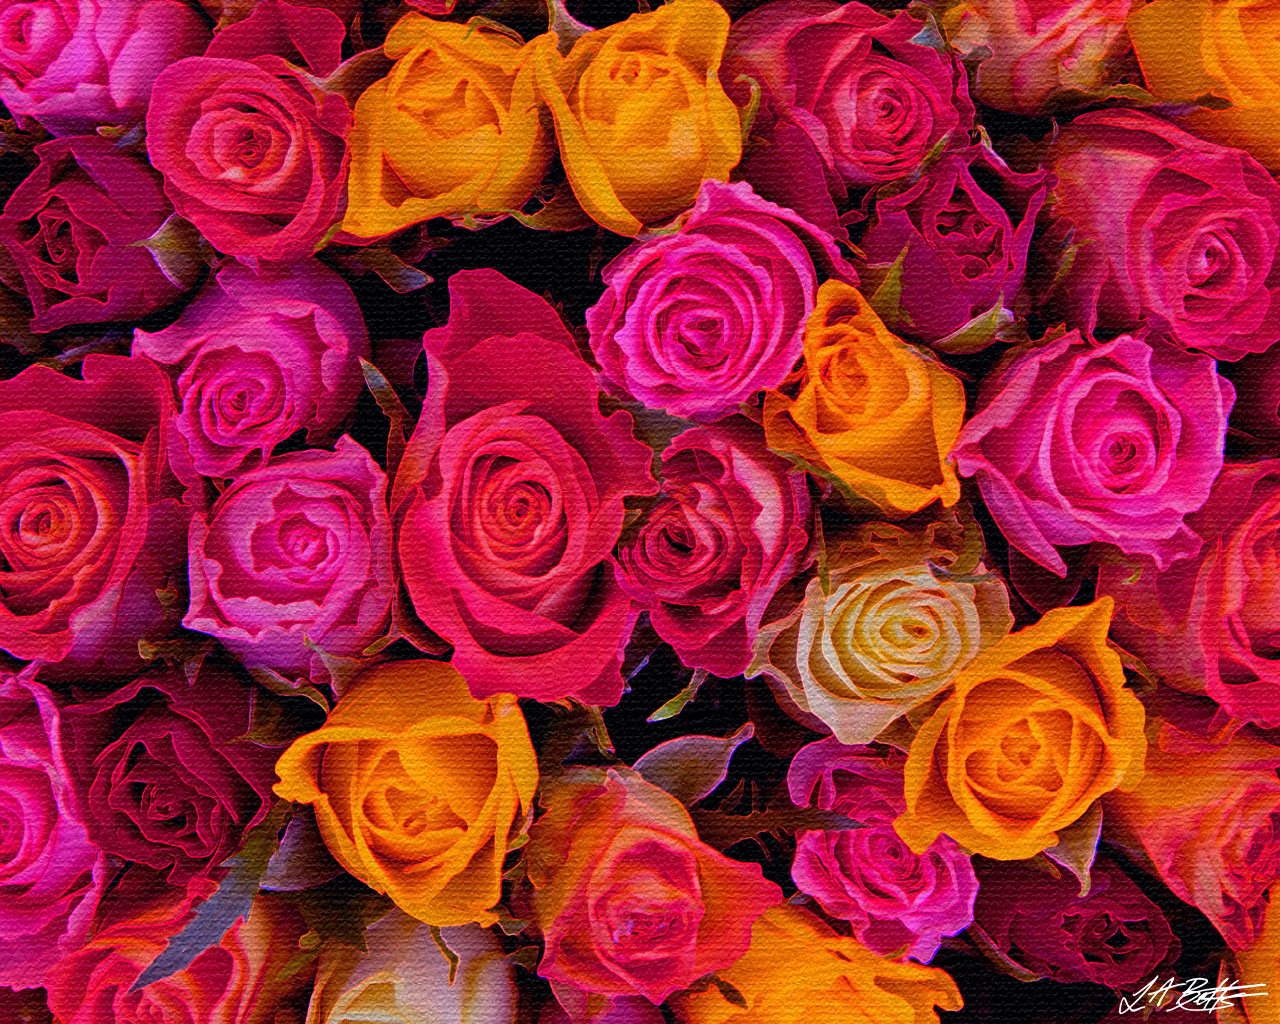 [48+] Roses Wallpaper Pics for Screen on WallpaperSafari